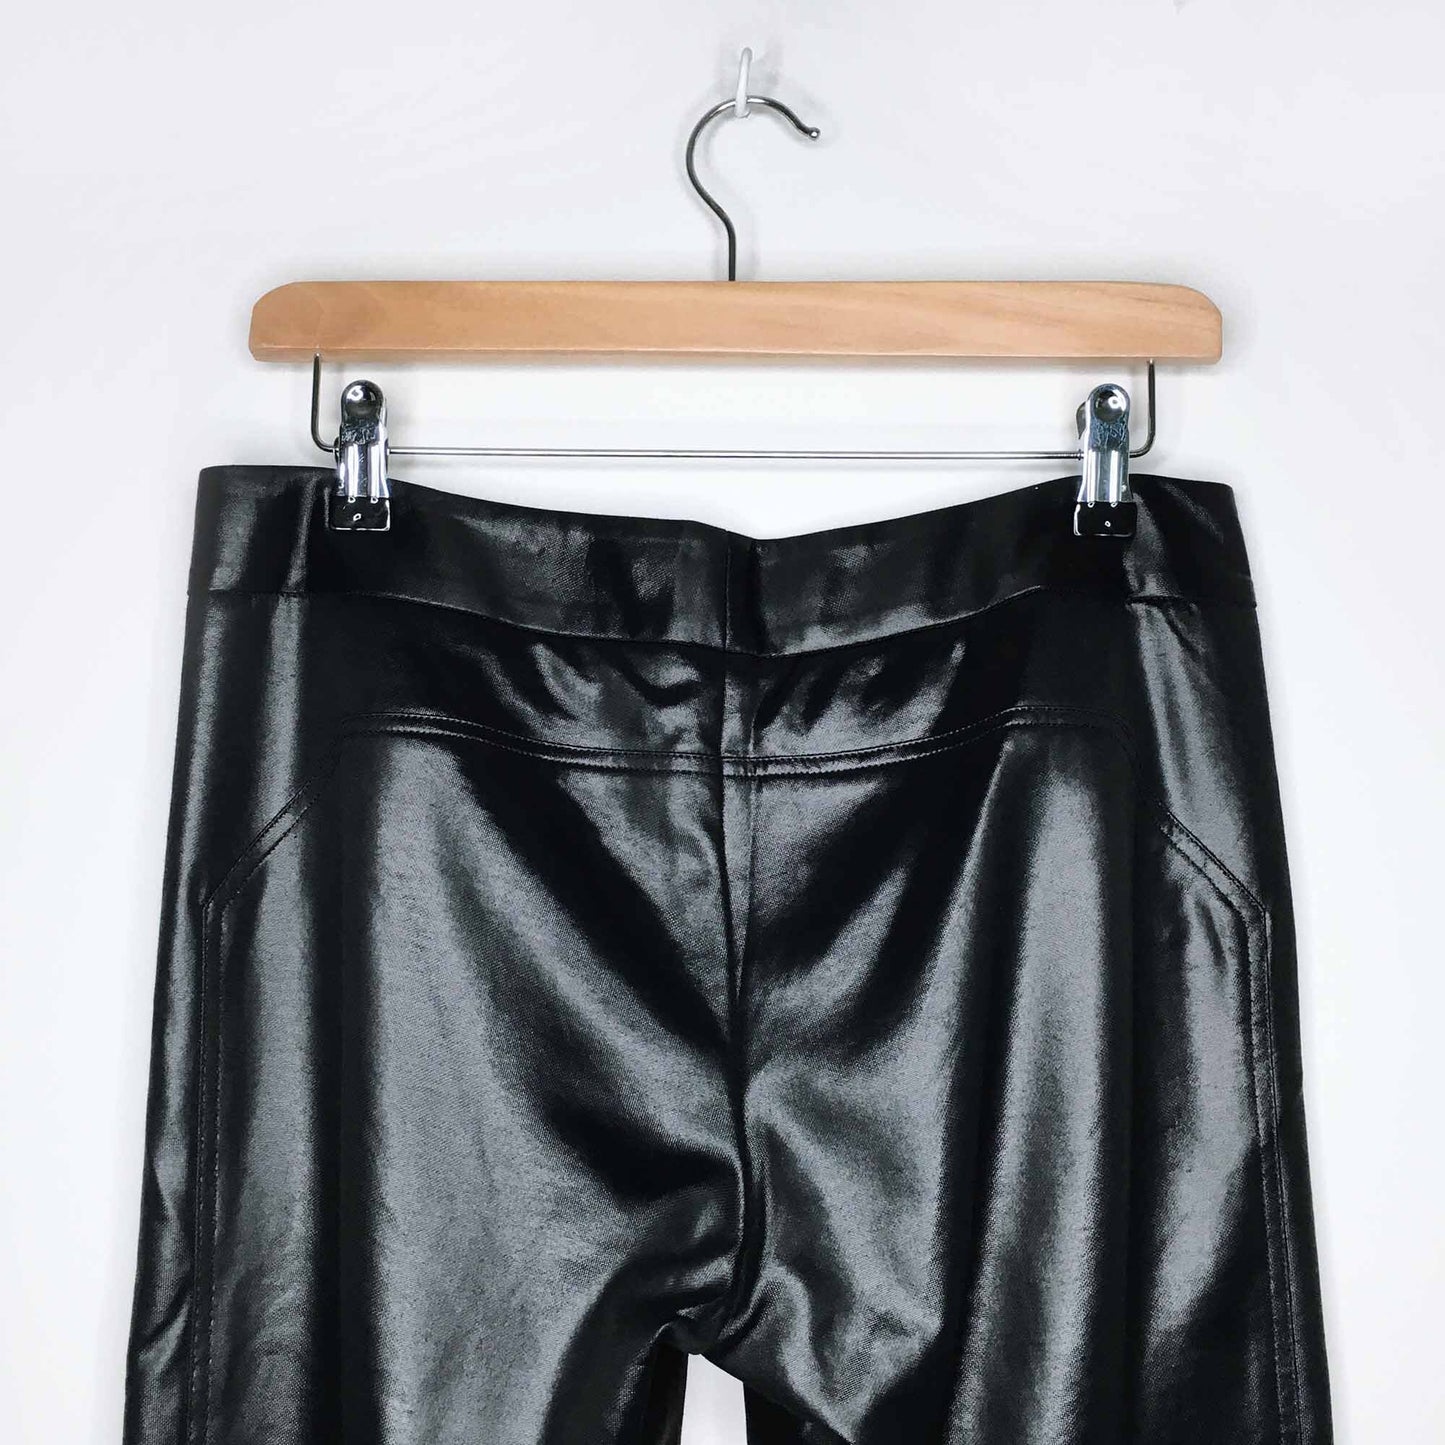 Diane von Furstenberg liquid slim pants - size 6